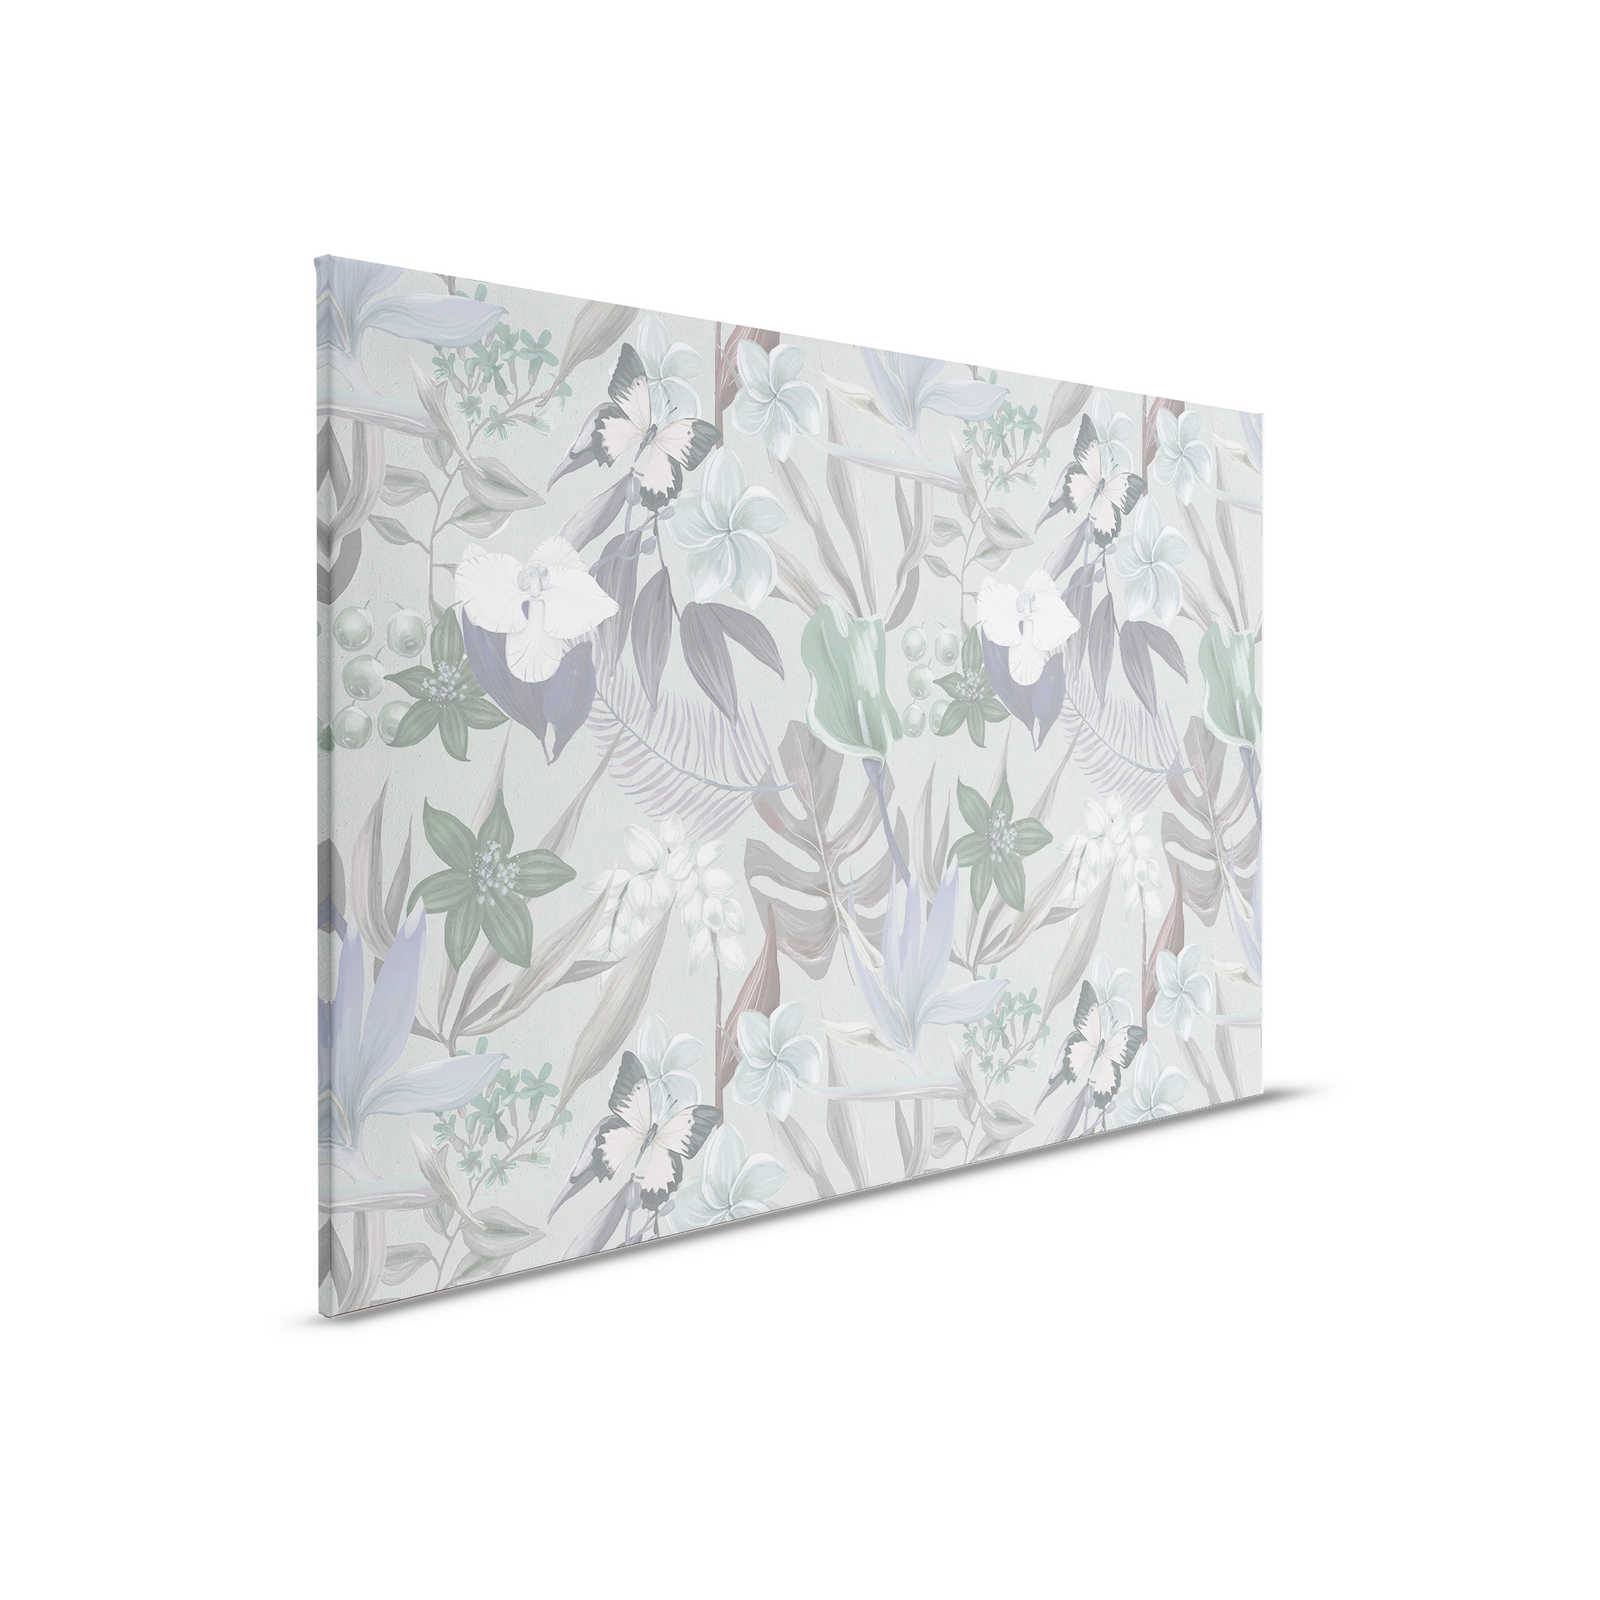         Florales Dschungel Leinwandbild gezeichnet | grün, weiß – 0,90 m x 0,60 m
    